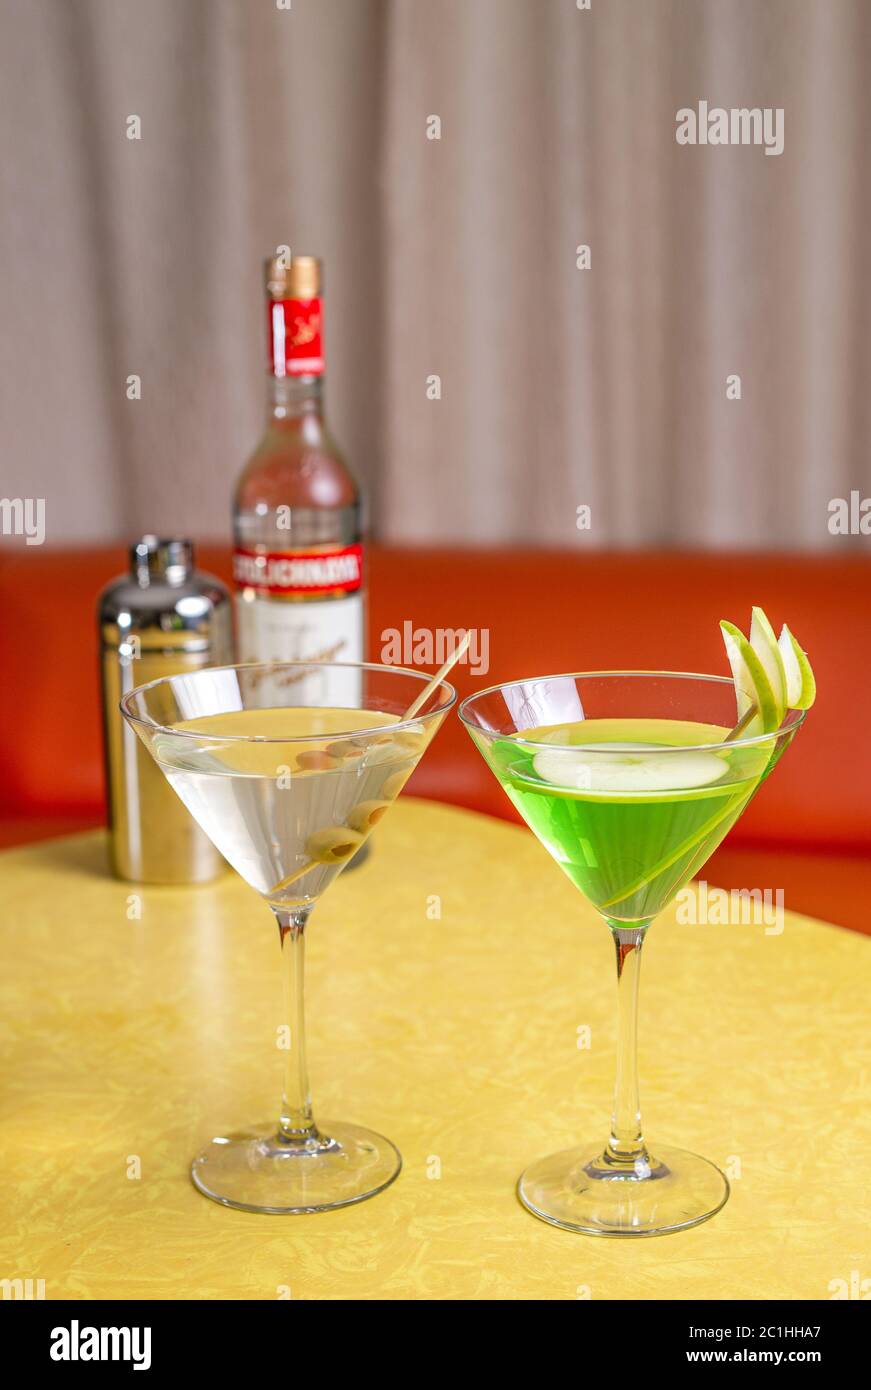 Cocktails martini préparés avec de la vodka Stolichnaya sur une table jaune vintage Banque D'Images